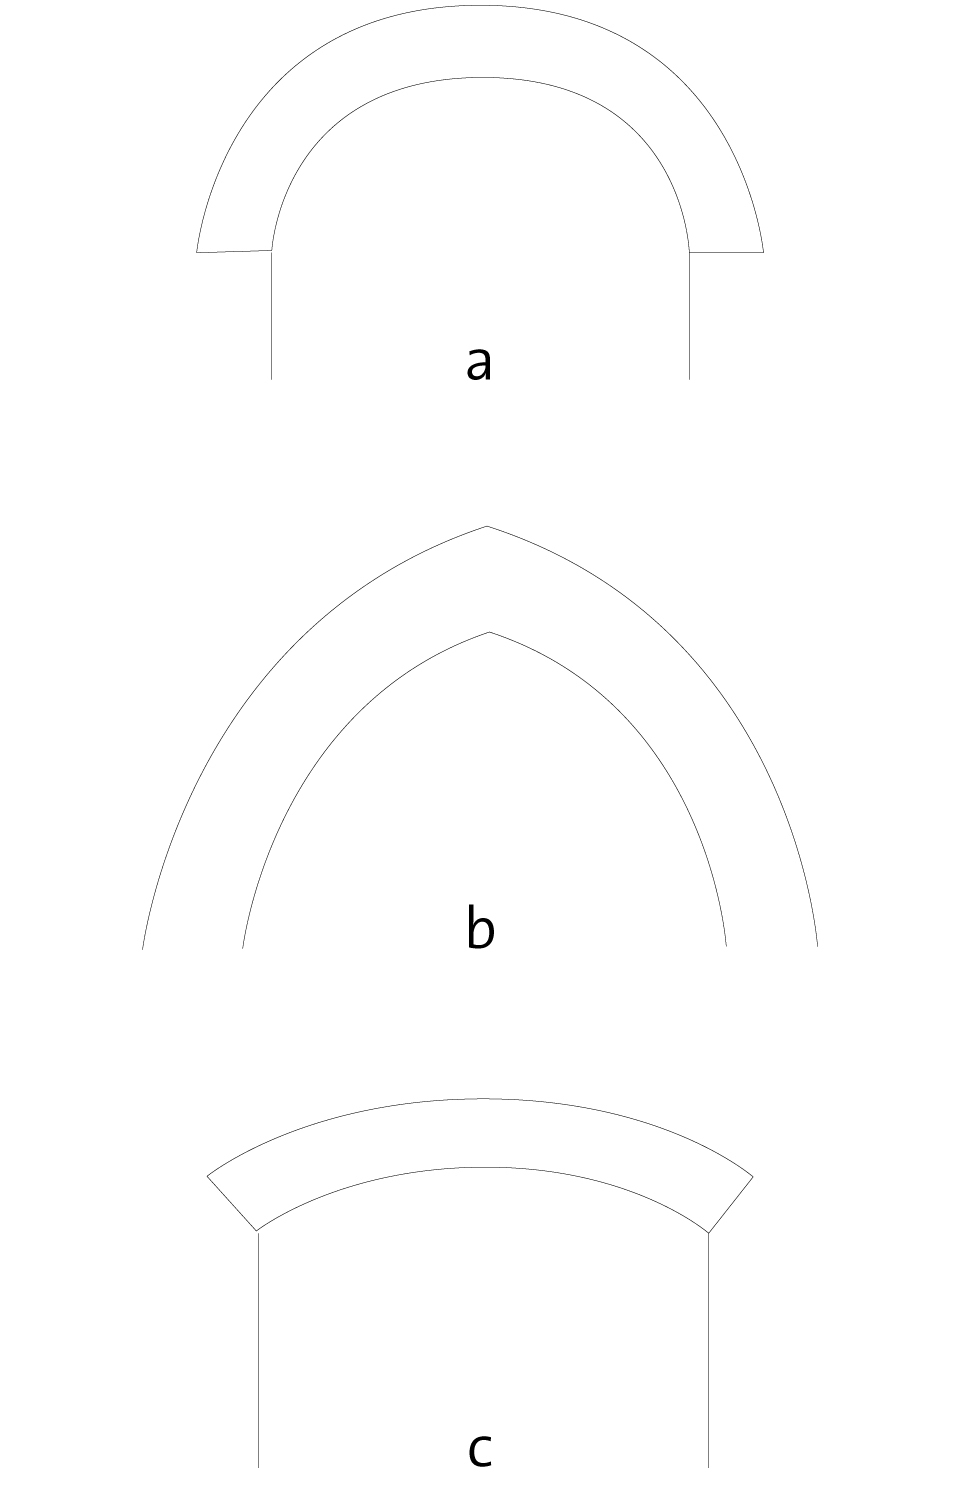 Bogenkonstruktion  Grundformen</br>
</br>
a Rundbogen</br>
b Spitzbogen </br>
c Flachbogen